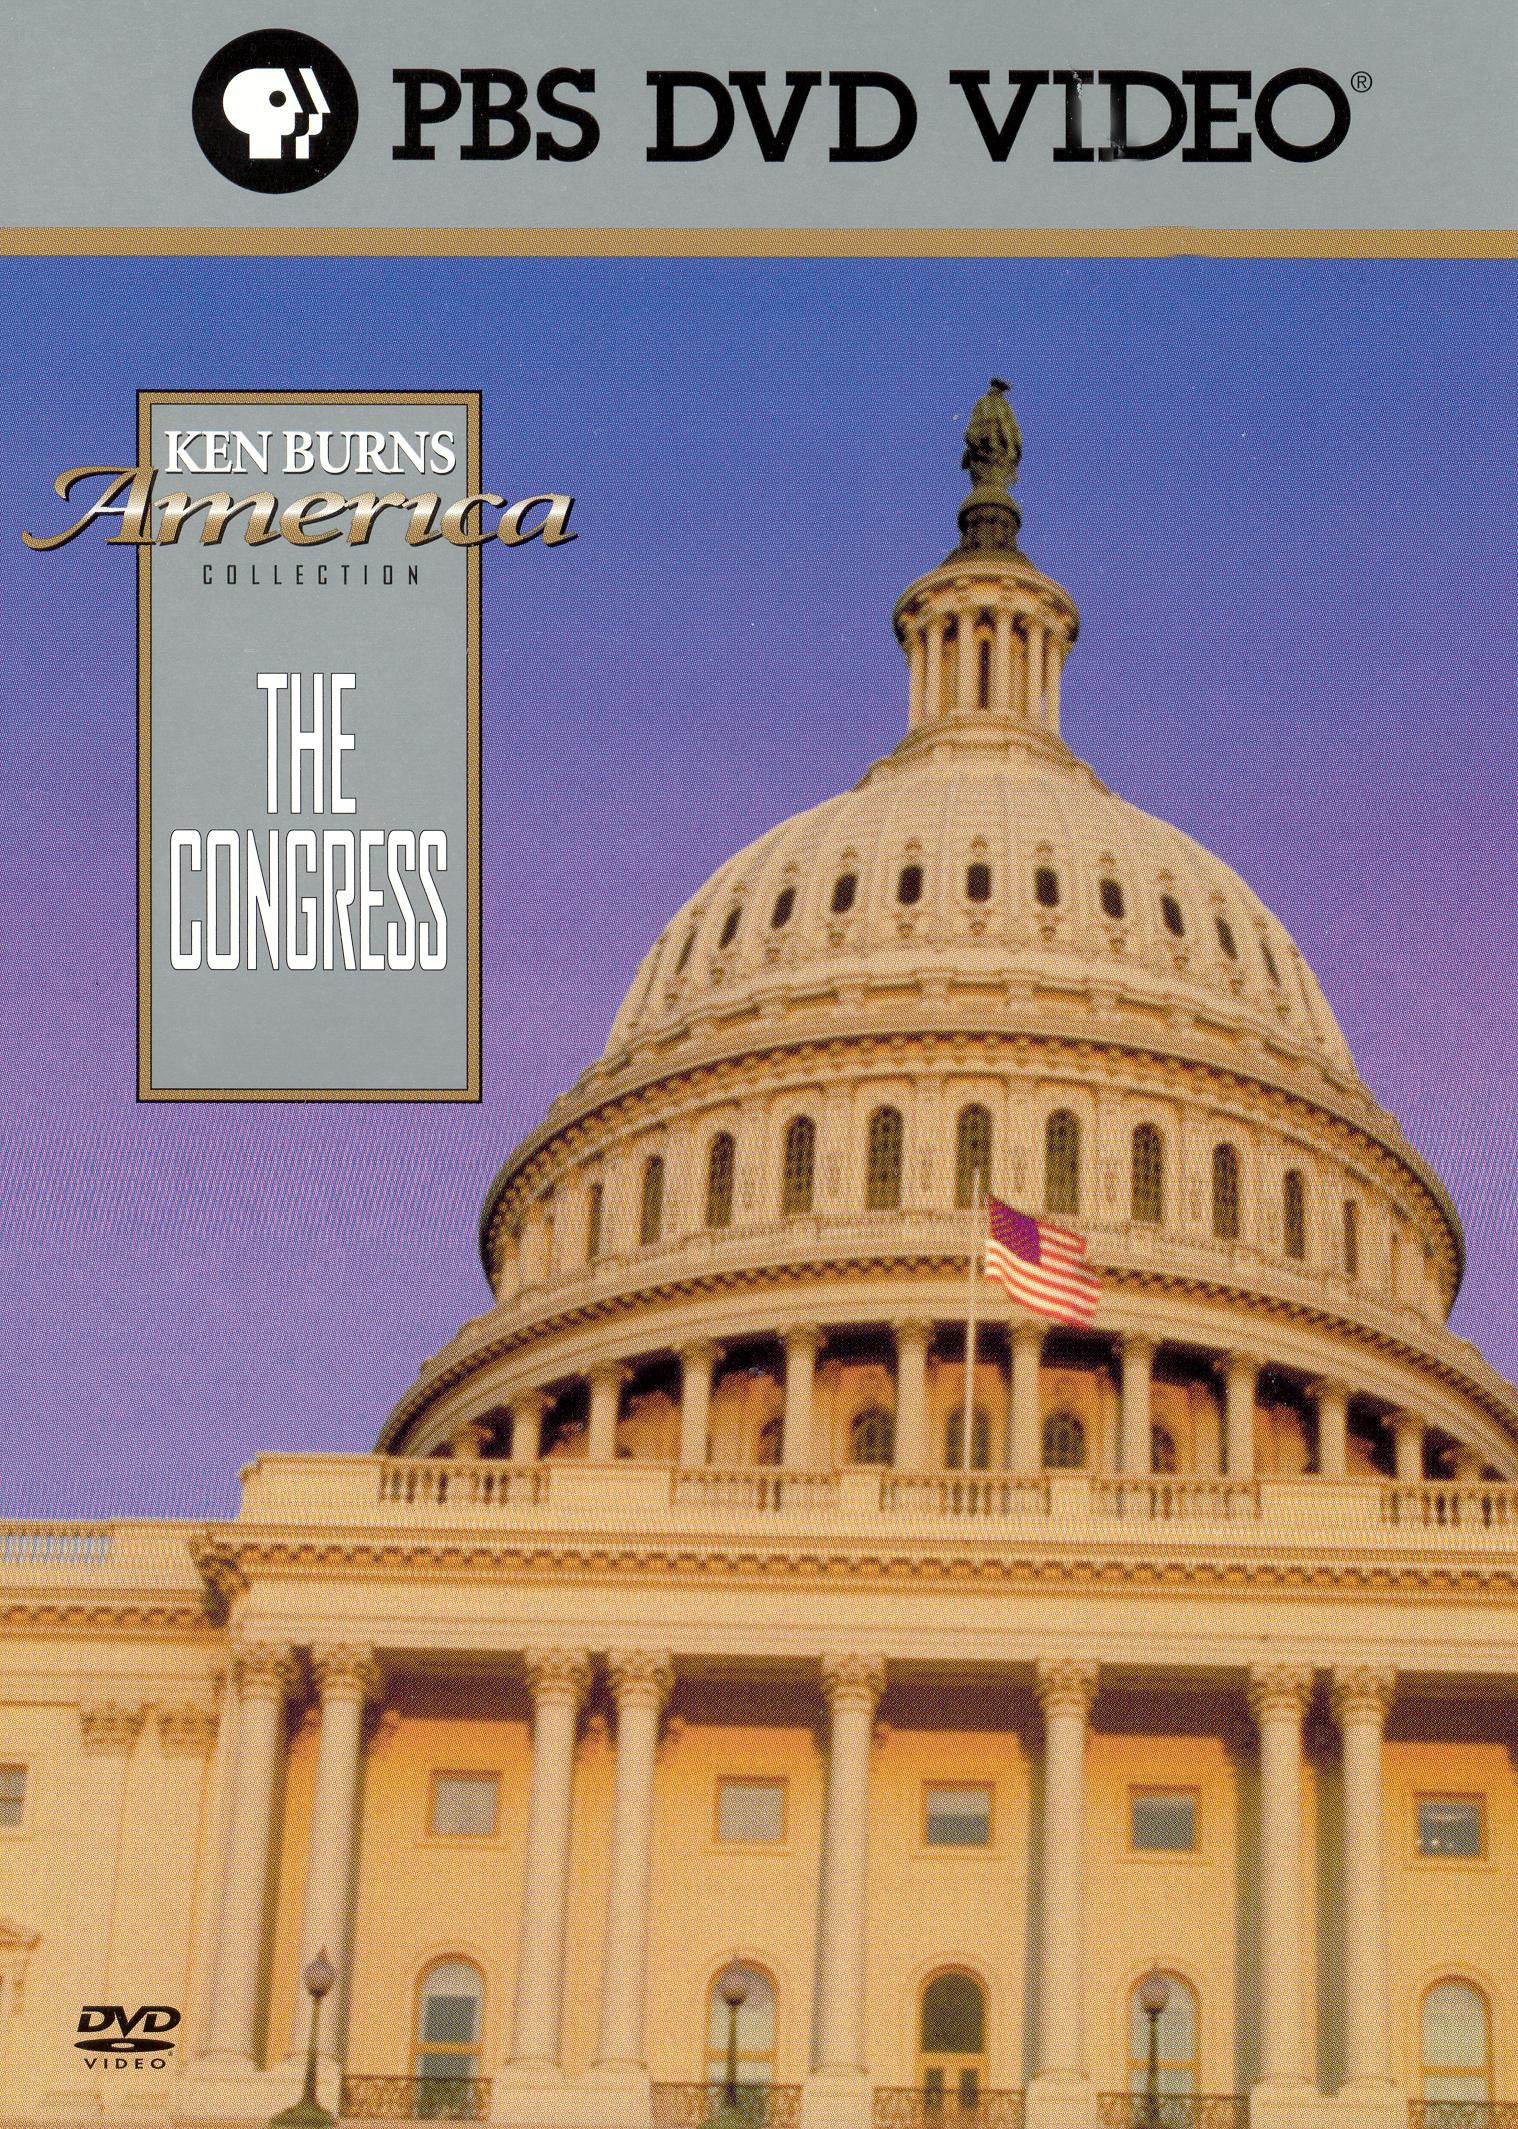 Ken Burns' America: The Congress cover art